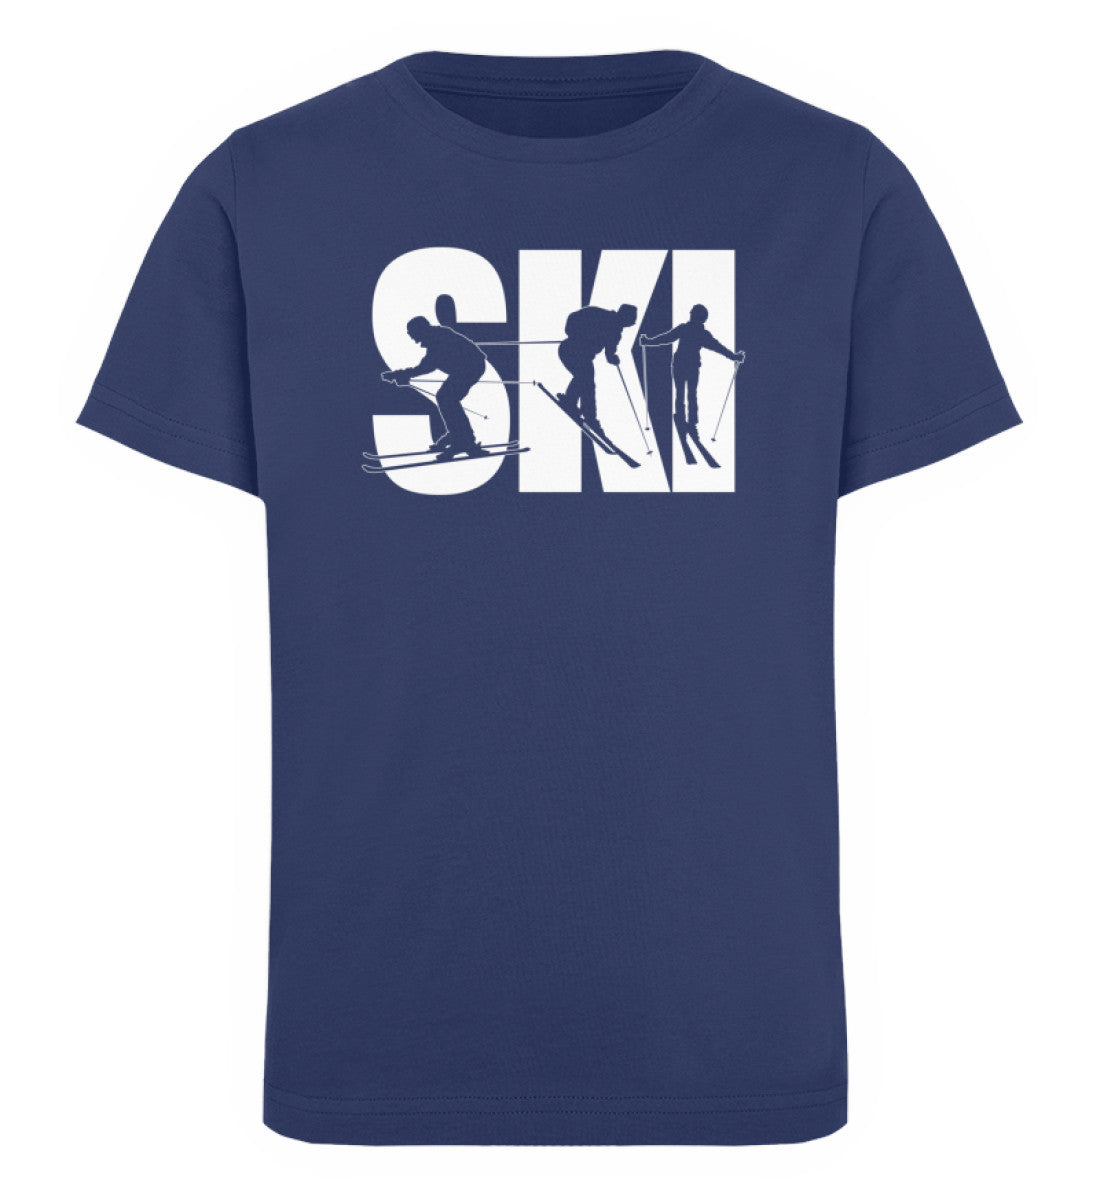 SKI - Kinder Premium Organic T-Shirt Navyblau